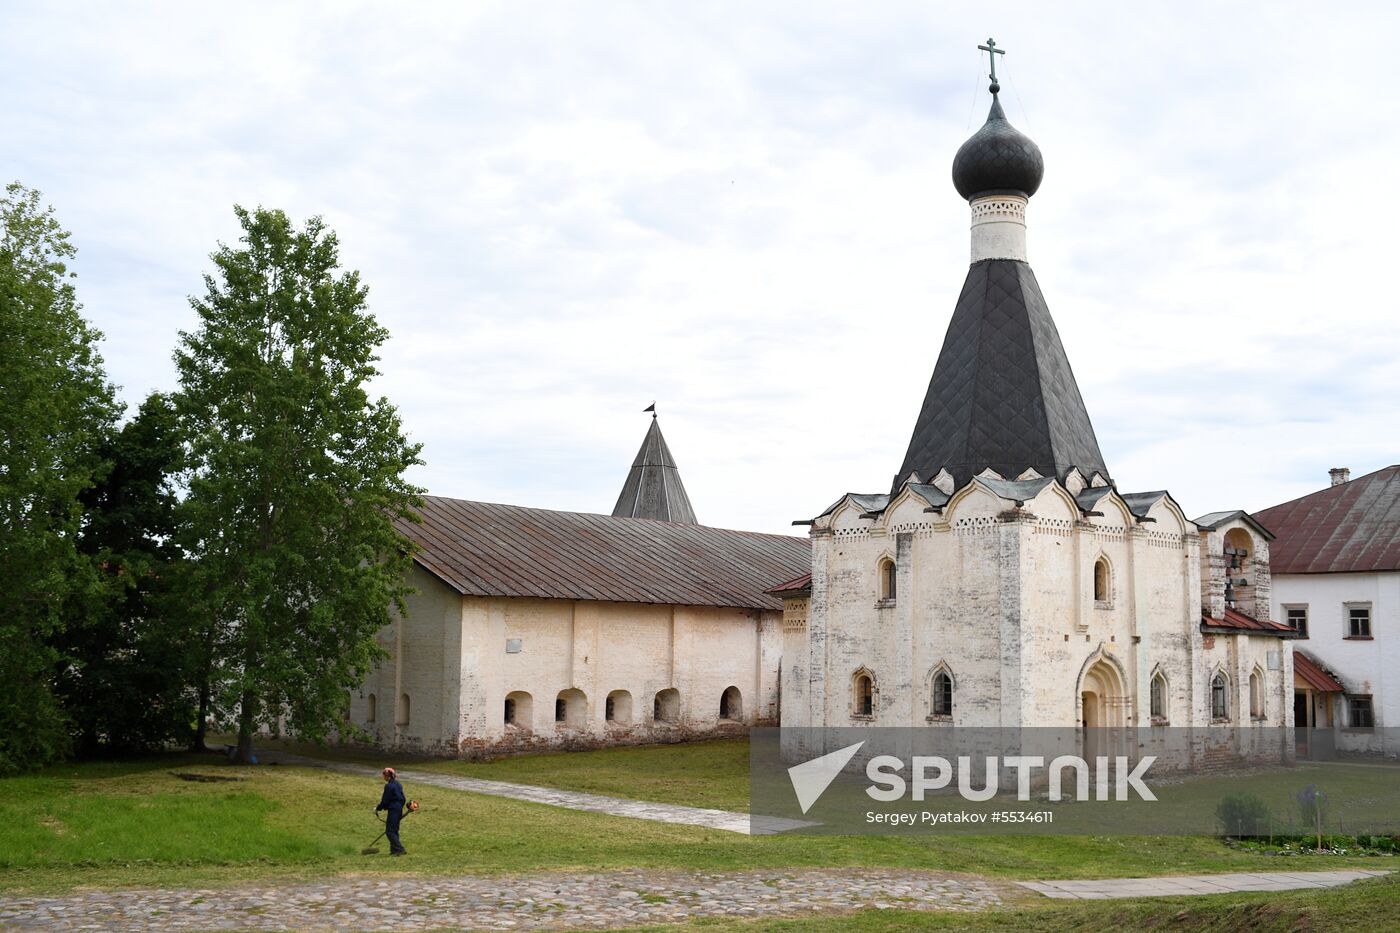 Kirillo-Belozersky Monastery in Vologda Region